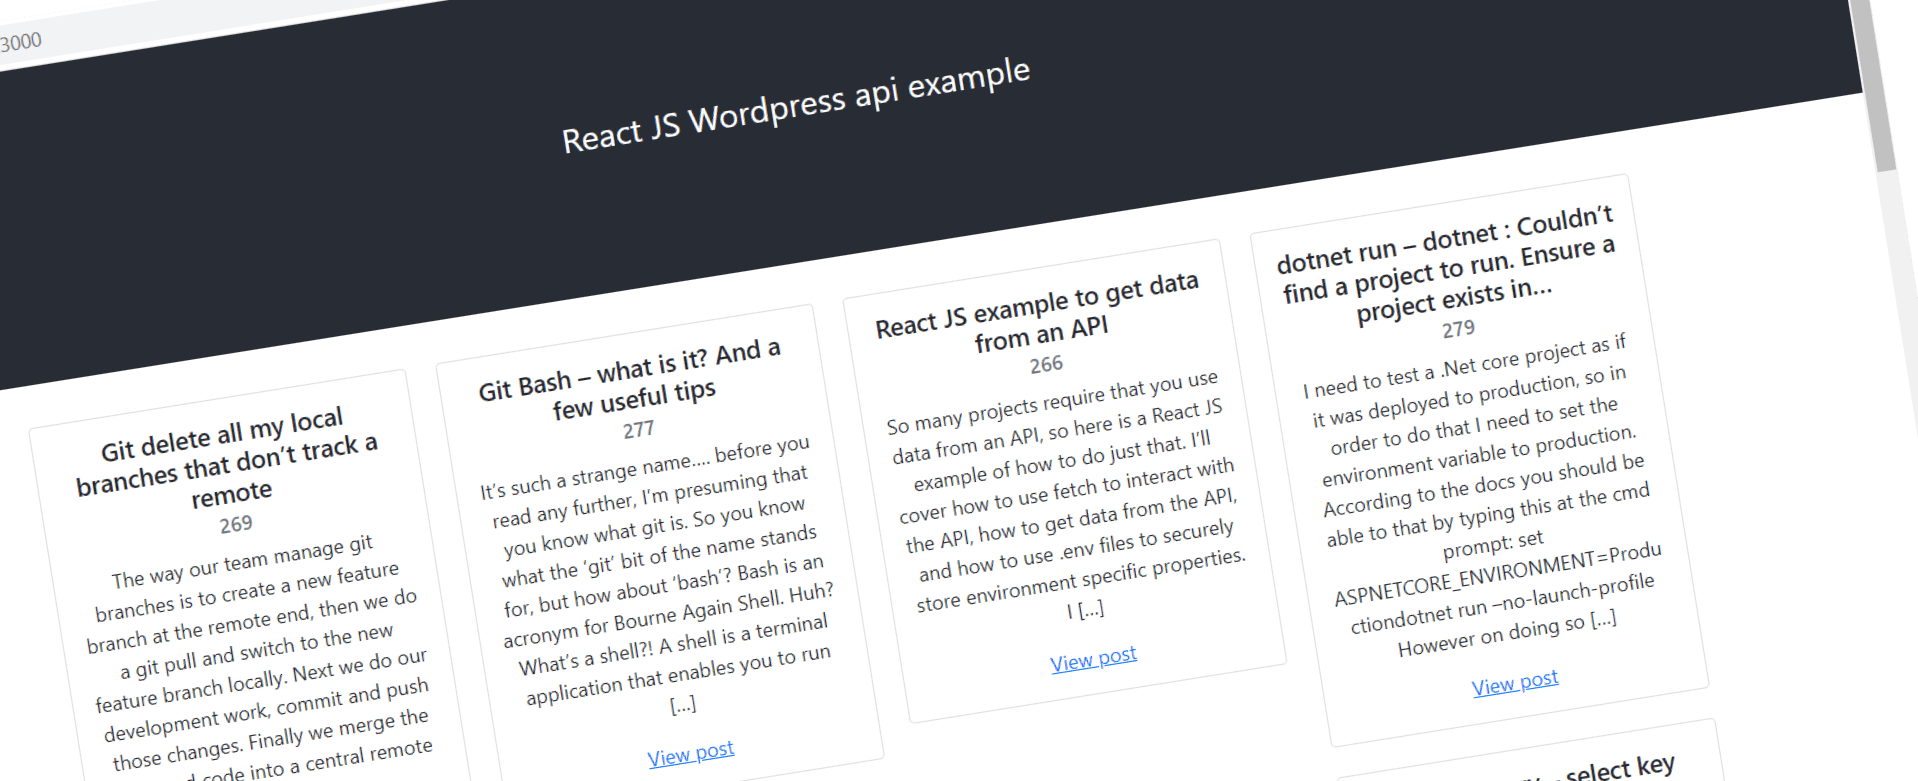 Using the Wordpress API with React JS